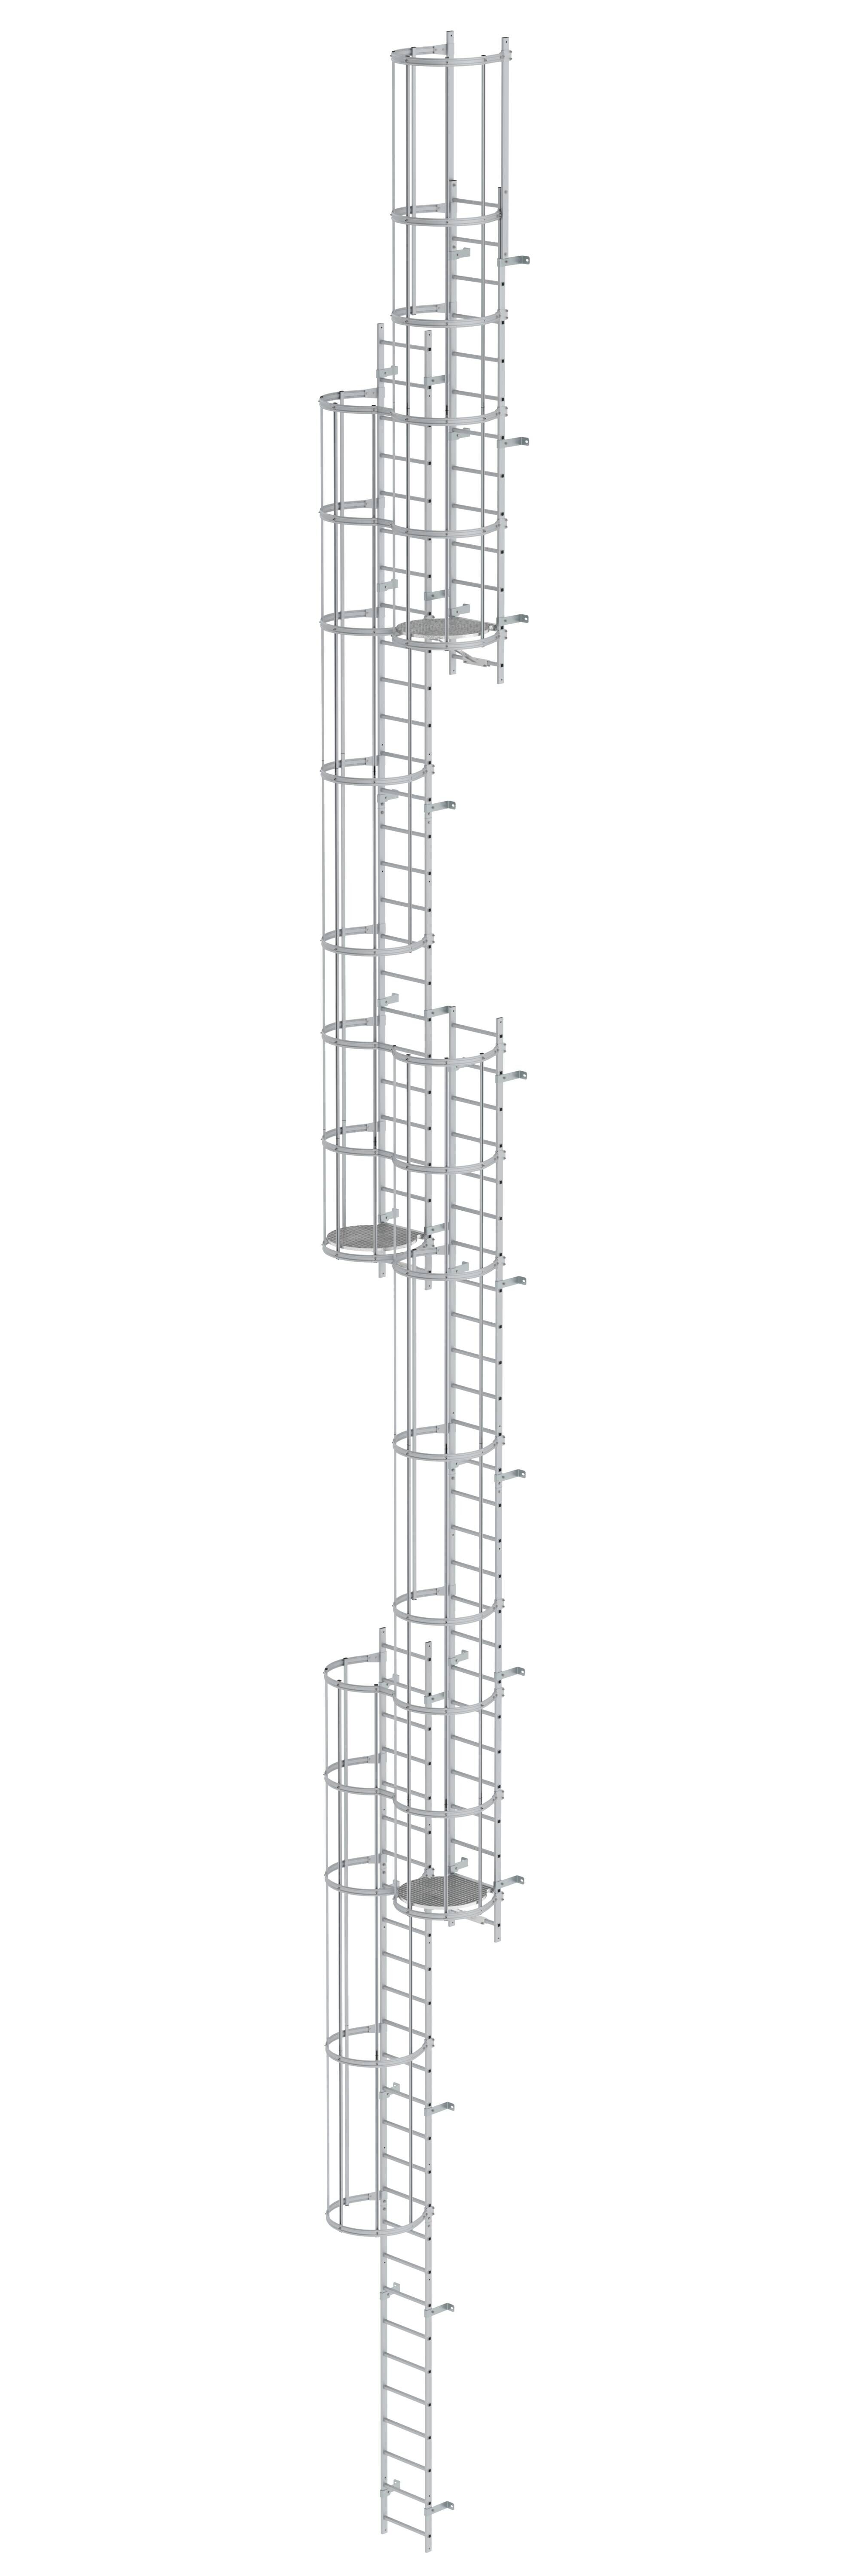 Mehrzügige Steigleiter mit Rückenschutz (Notleiter) Aluminium eloxiert 19,96m